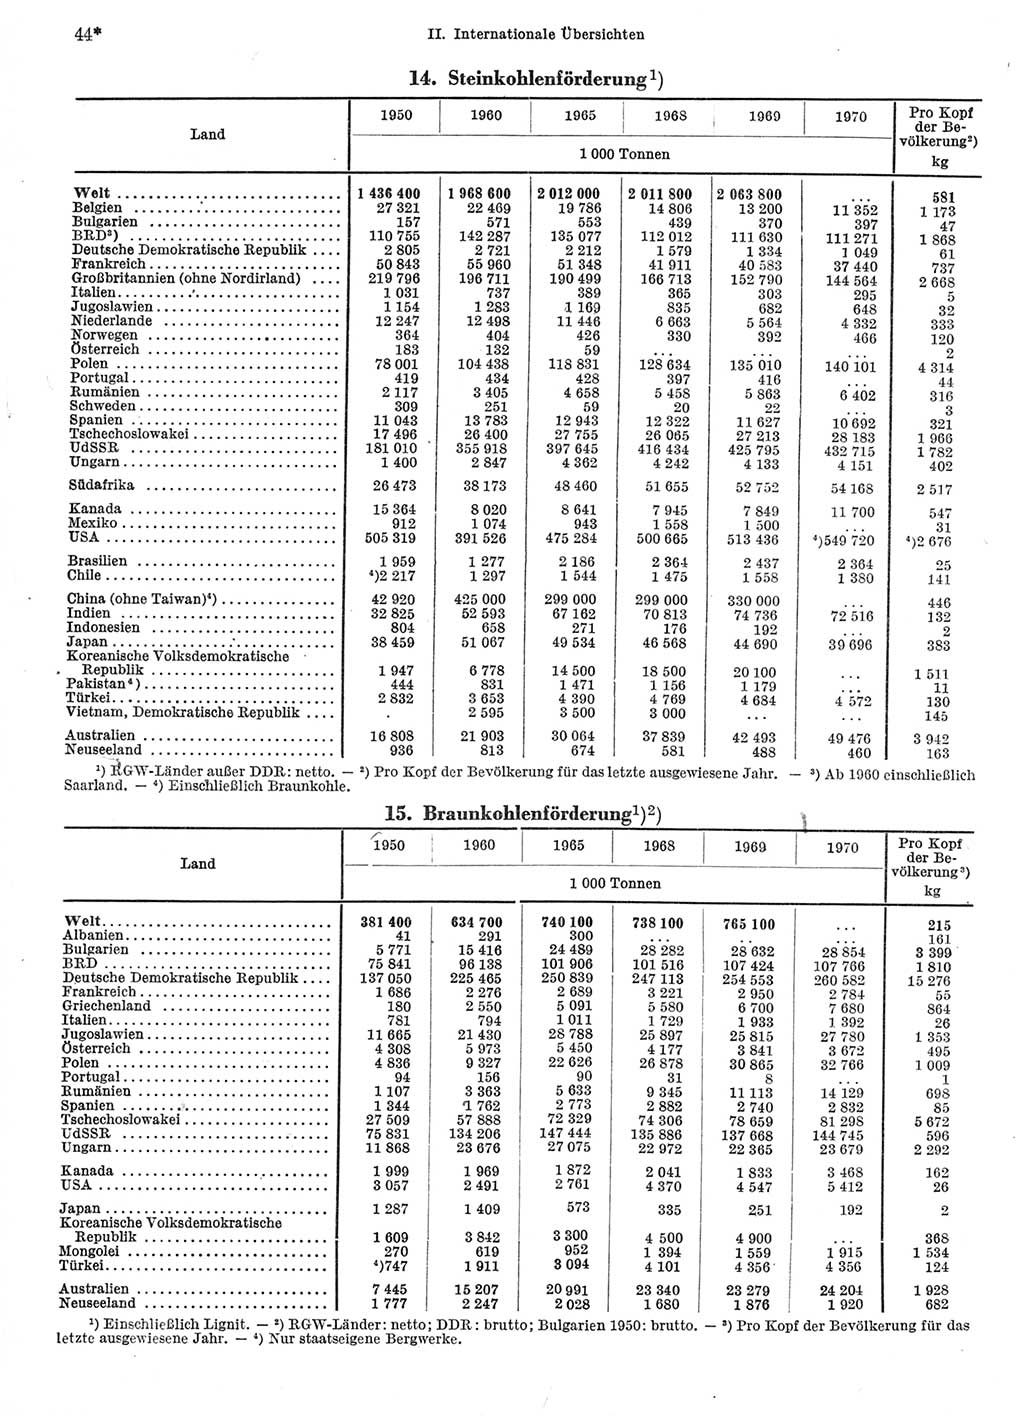 Statistisches Jahrbuch der Deutschen Demokratischen Republik (DDR) 1972, Seite 44 (Stat. Jb. DDR 1972, S. 44)